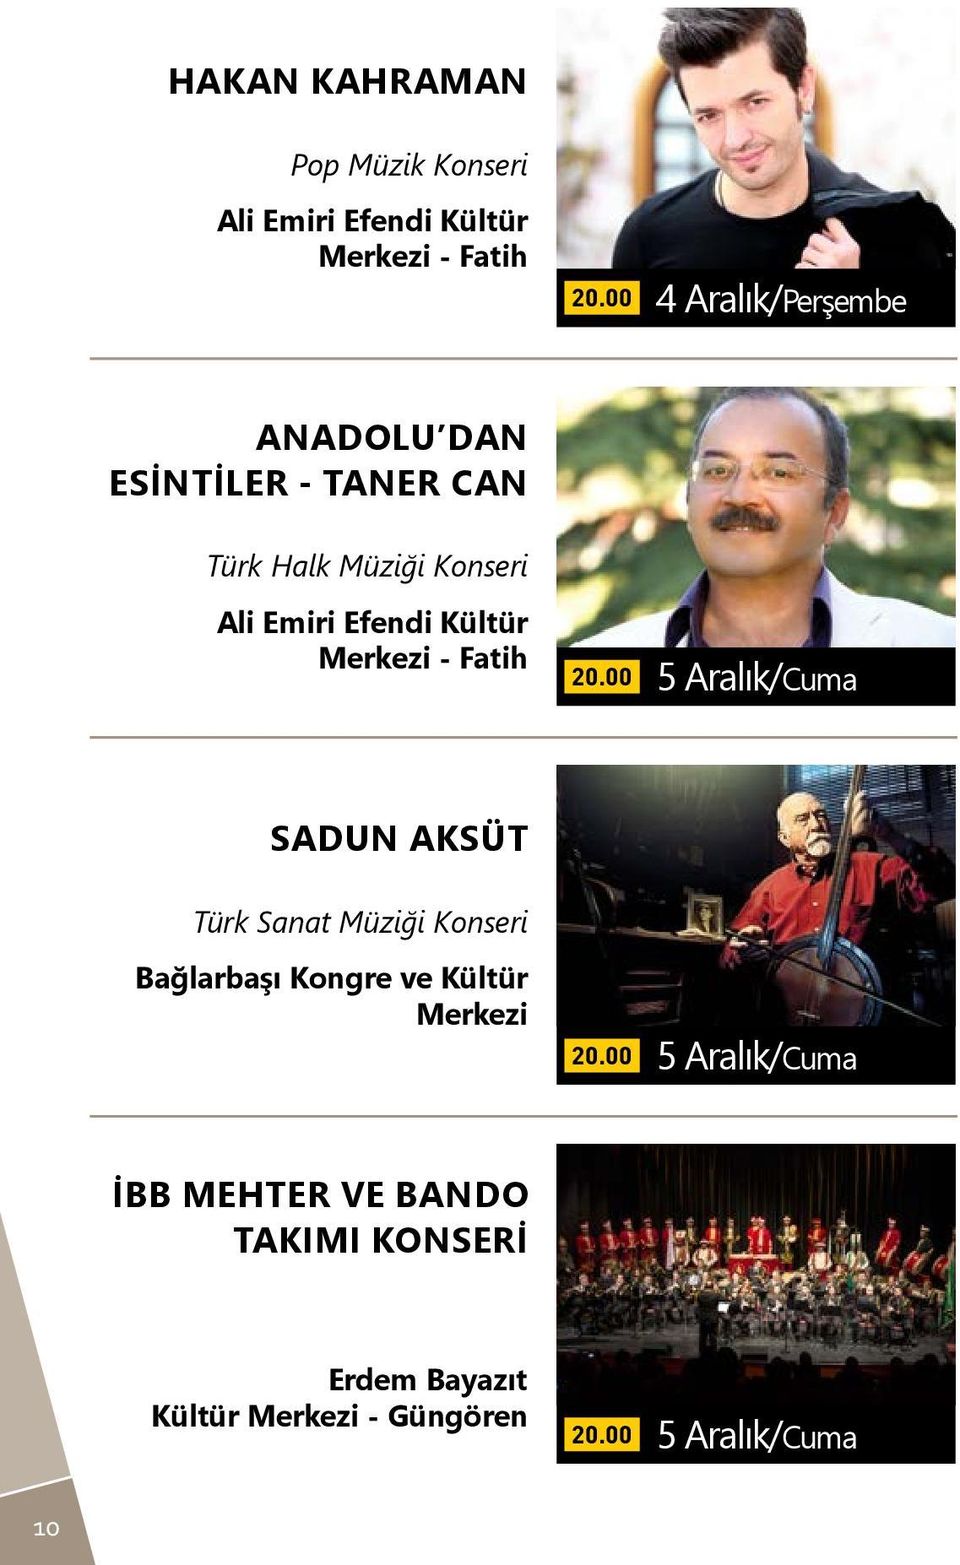 Fatih 5 Aralık/Cuma Sadun AksÜt Türk Sanat Müziği Konseri Bağlarbaşı Kongre ve Kültür Merkezi 5